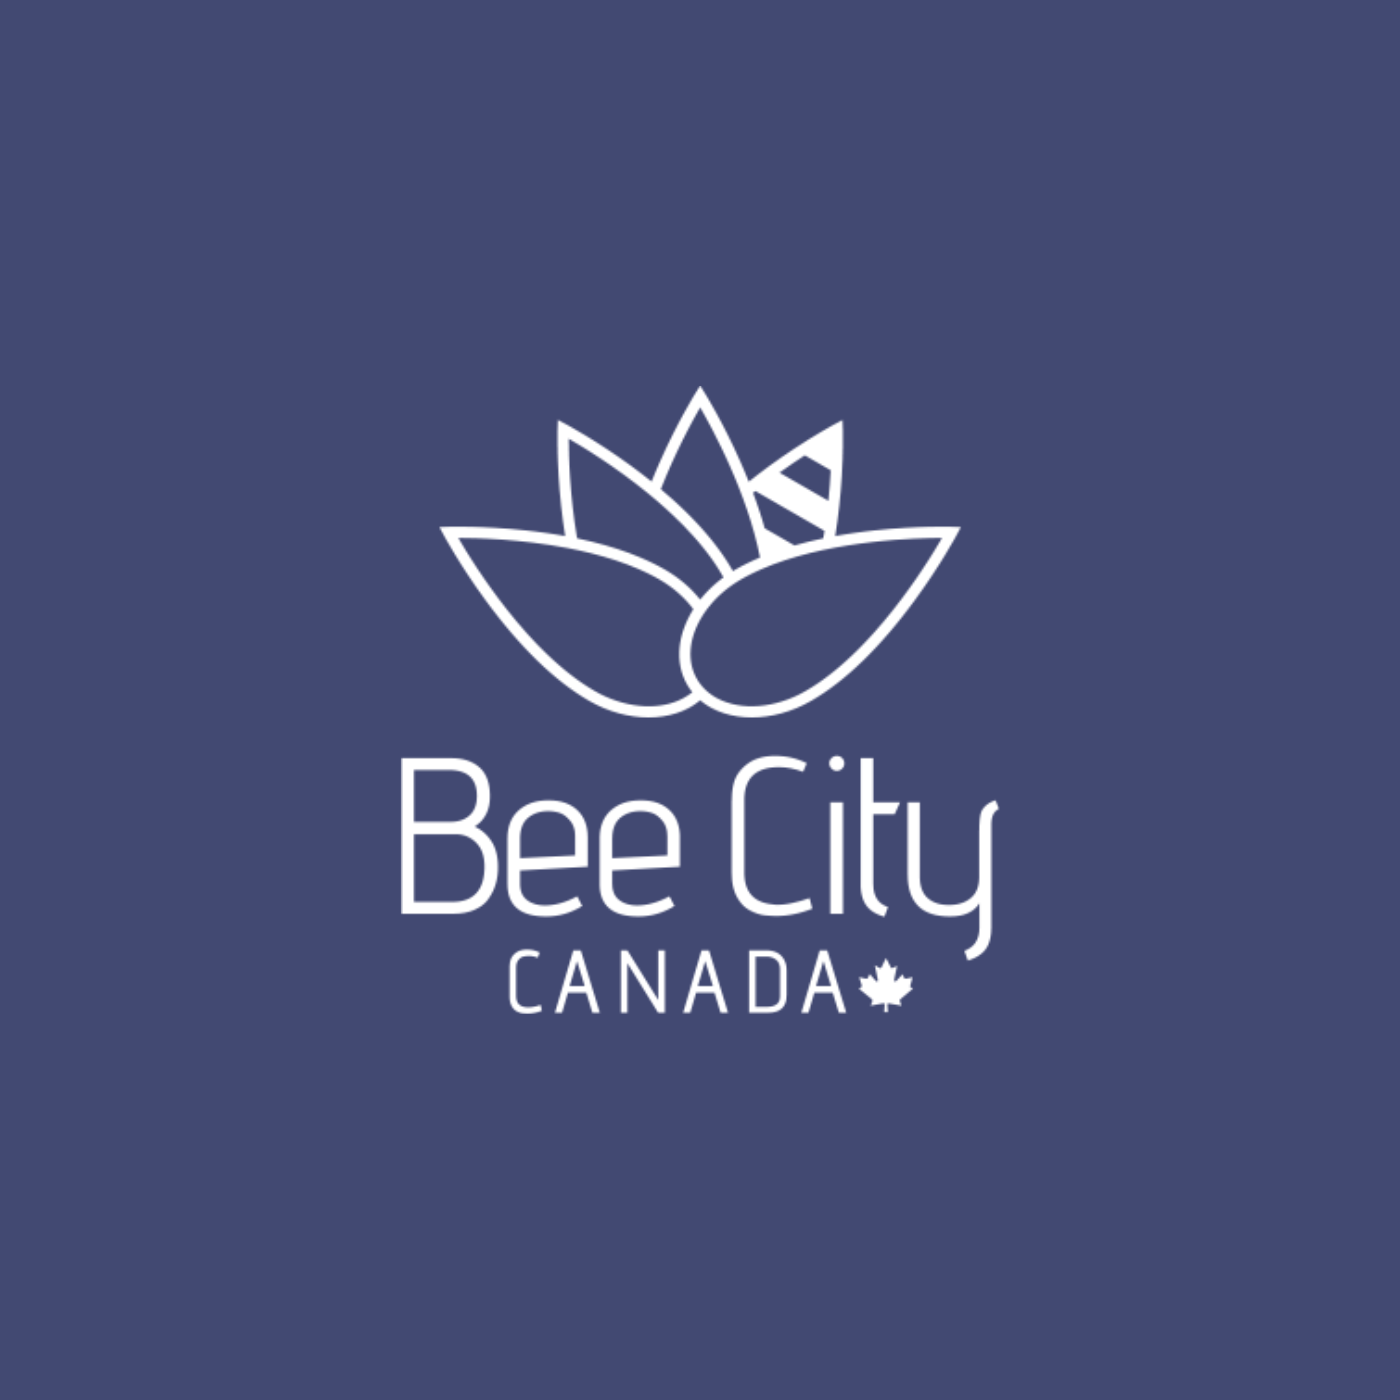 Bleu Lavande collabore avec Bee City Canada pour la survie des abeilles